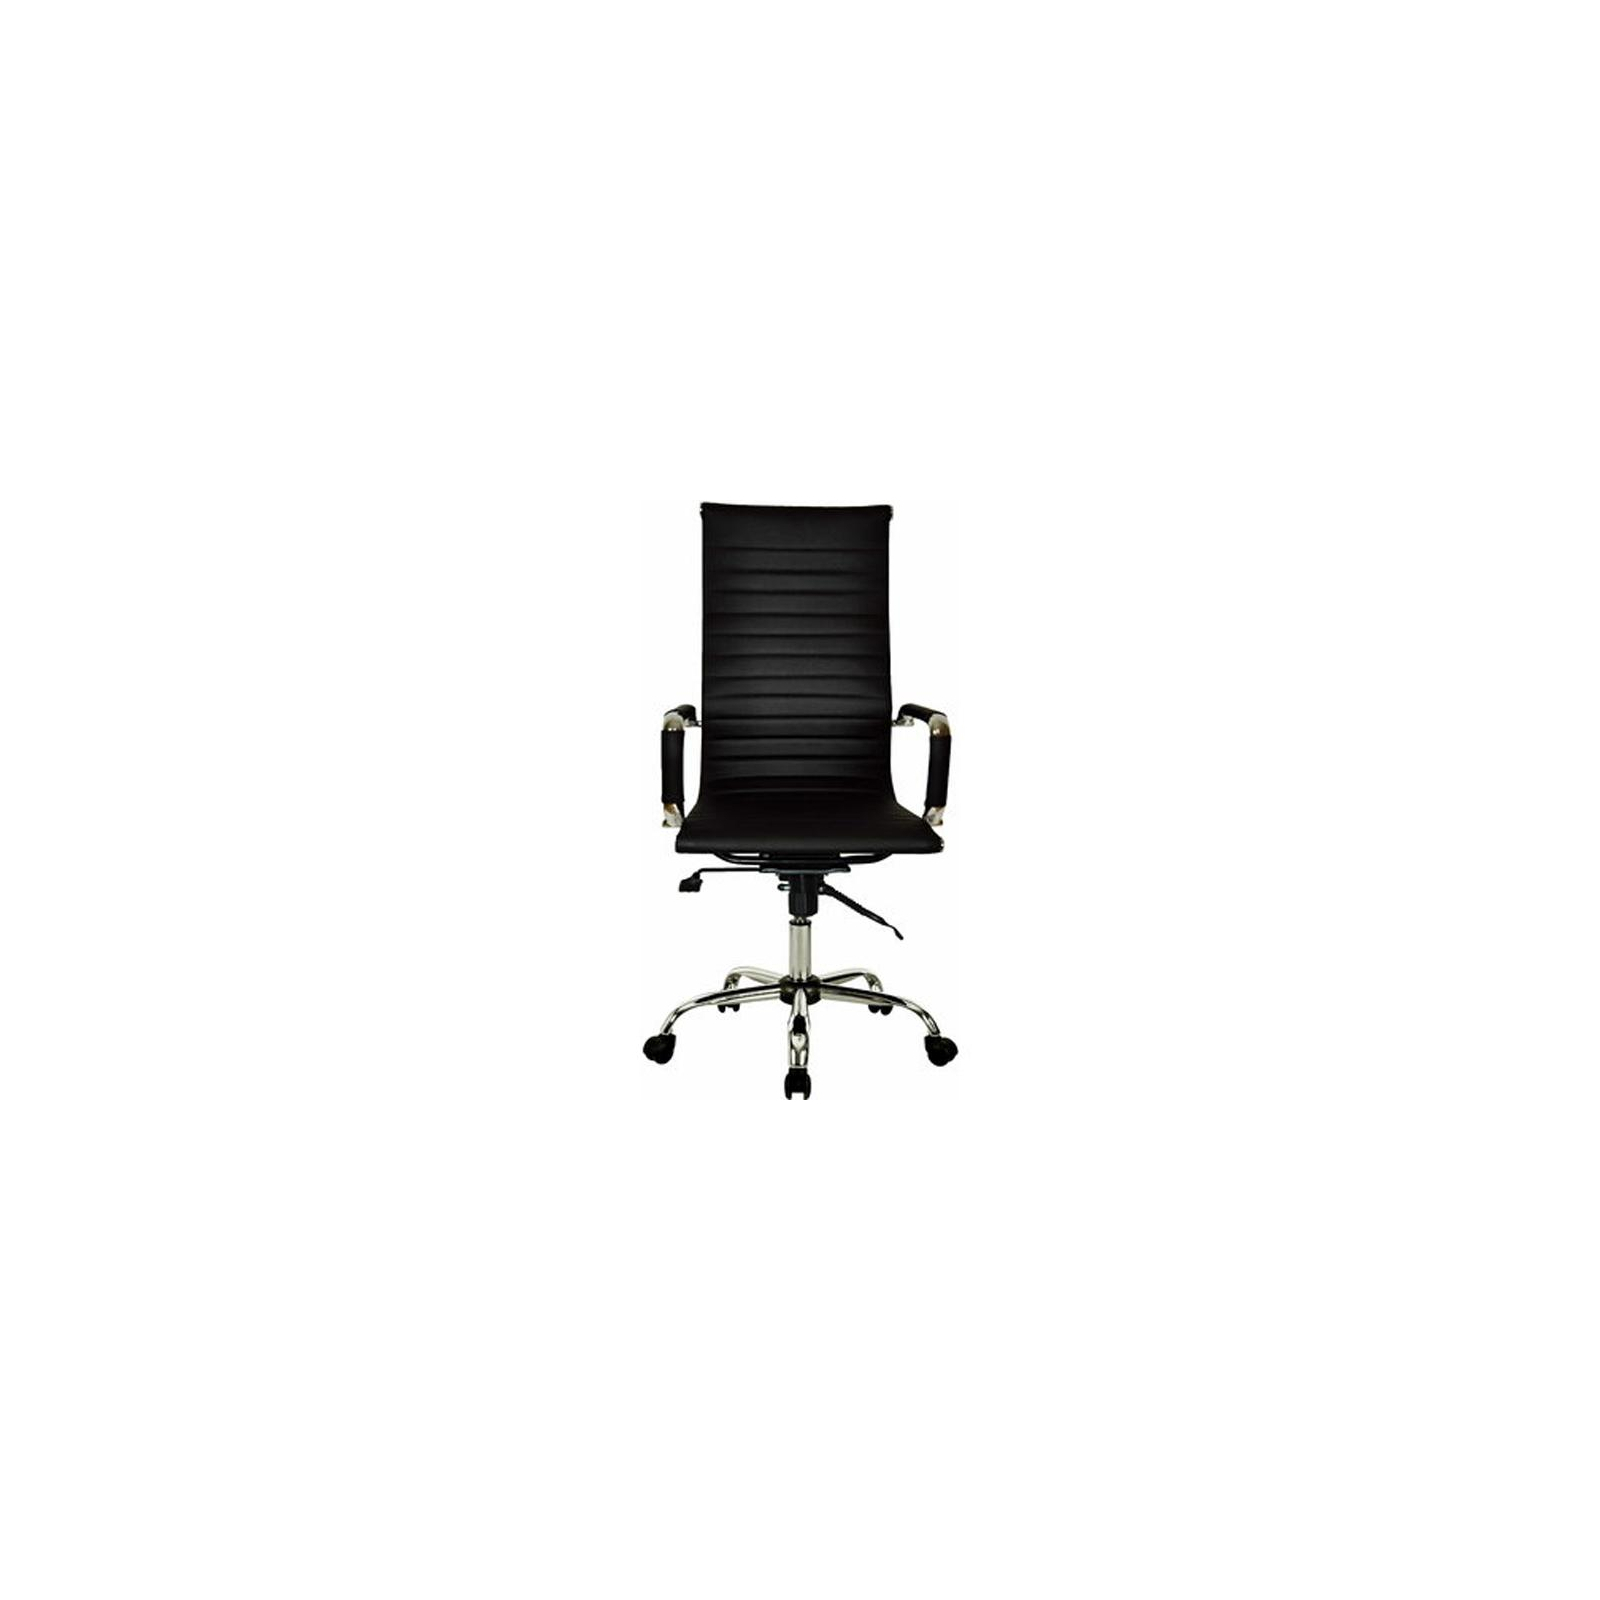 Офисное кресло Примтекс плюс Elegance Chrome MF D-5 Black (Elegance chrome MF D-5) изображение 2